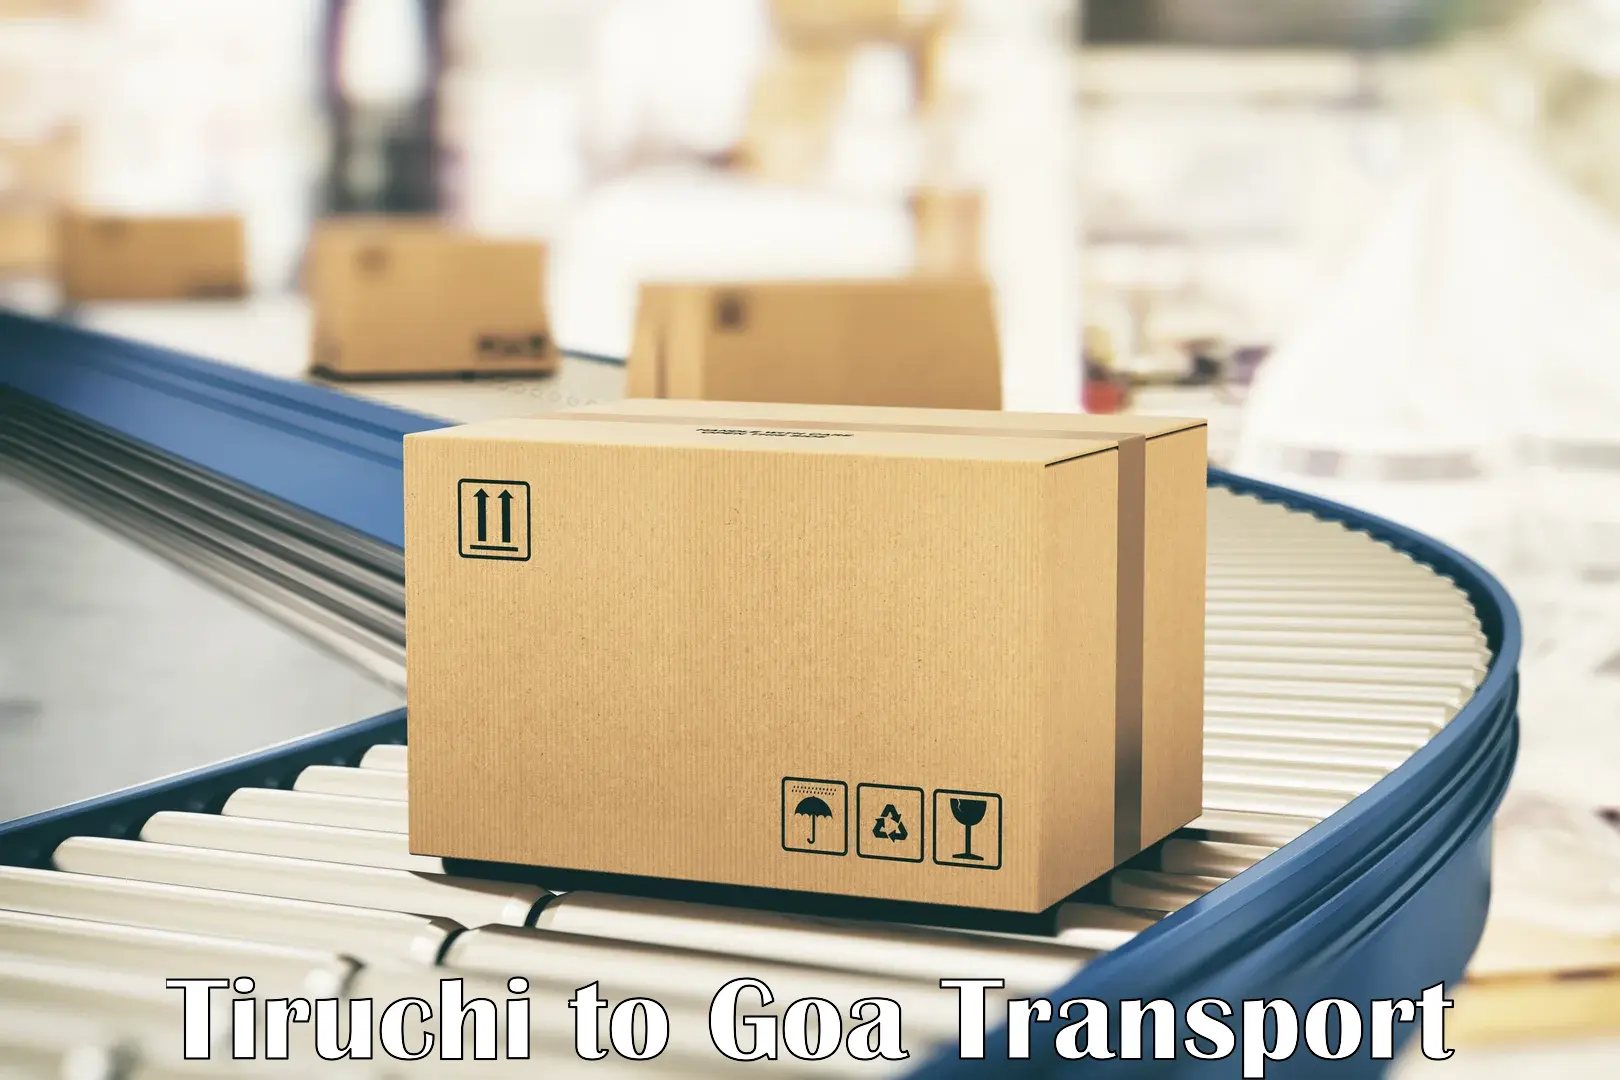 Furniture transport service Tiruchi to Panjim